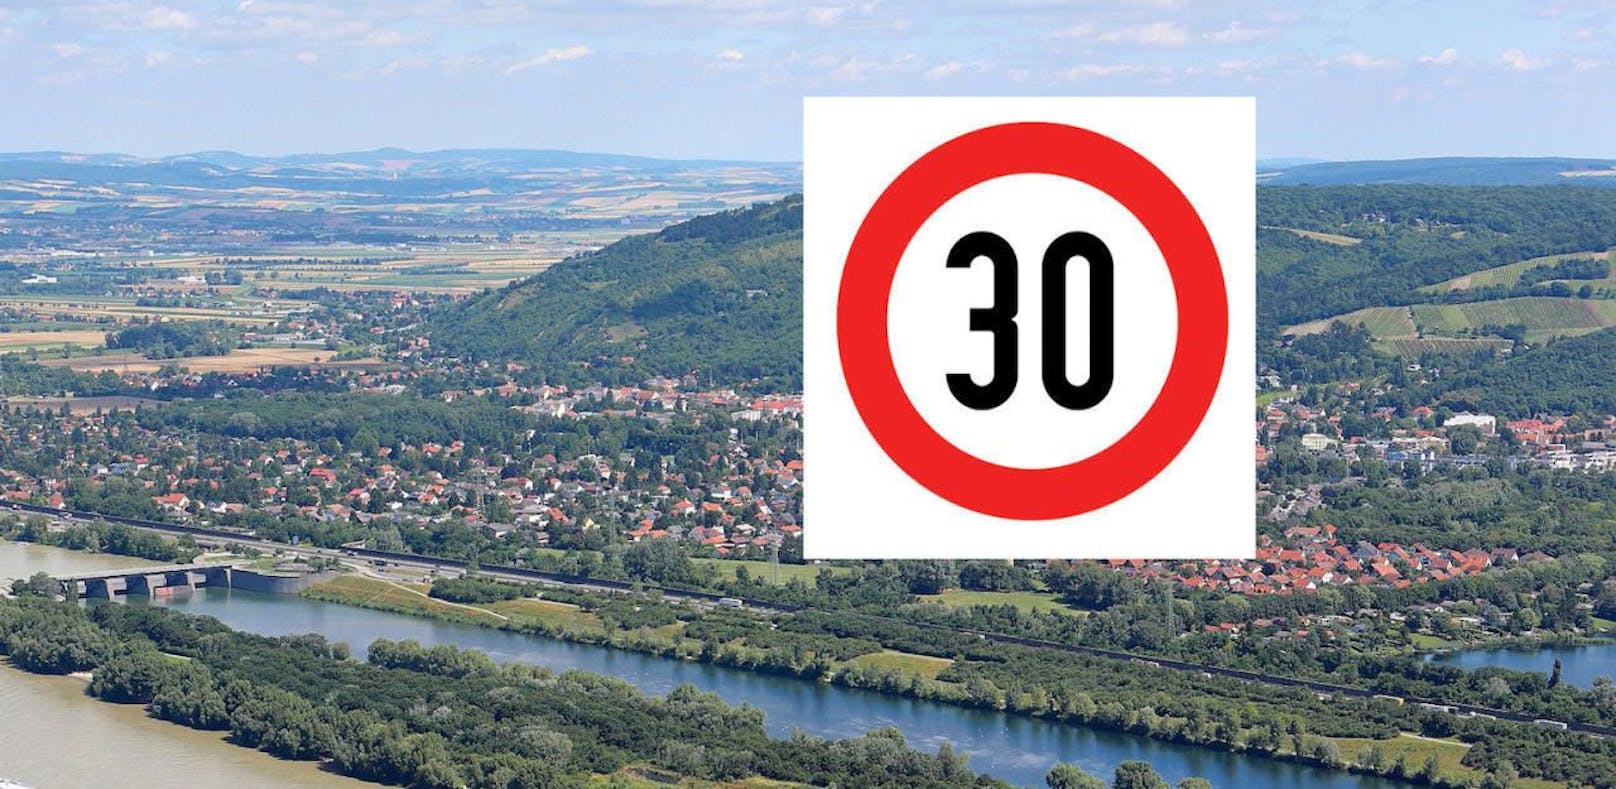 48 Gemeinden in NÖ für Tempo 30 im Ortsgebiet